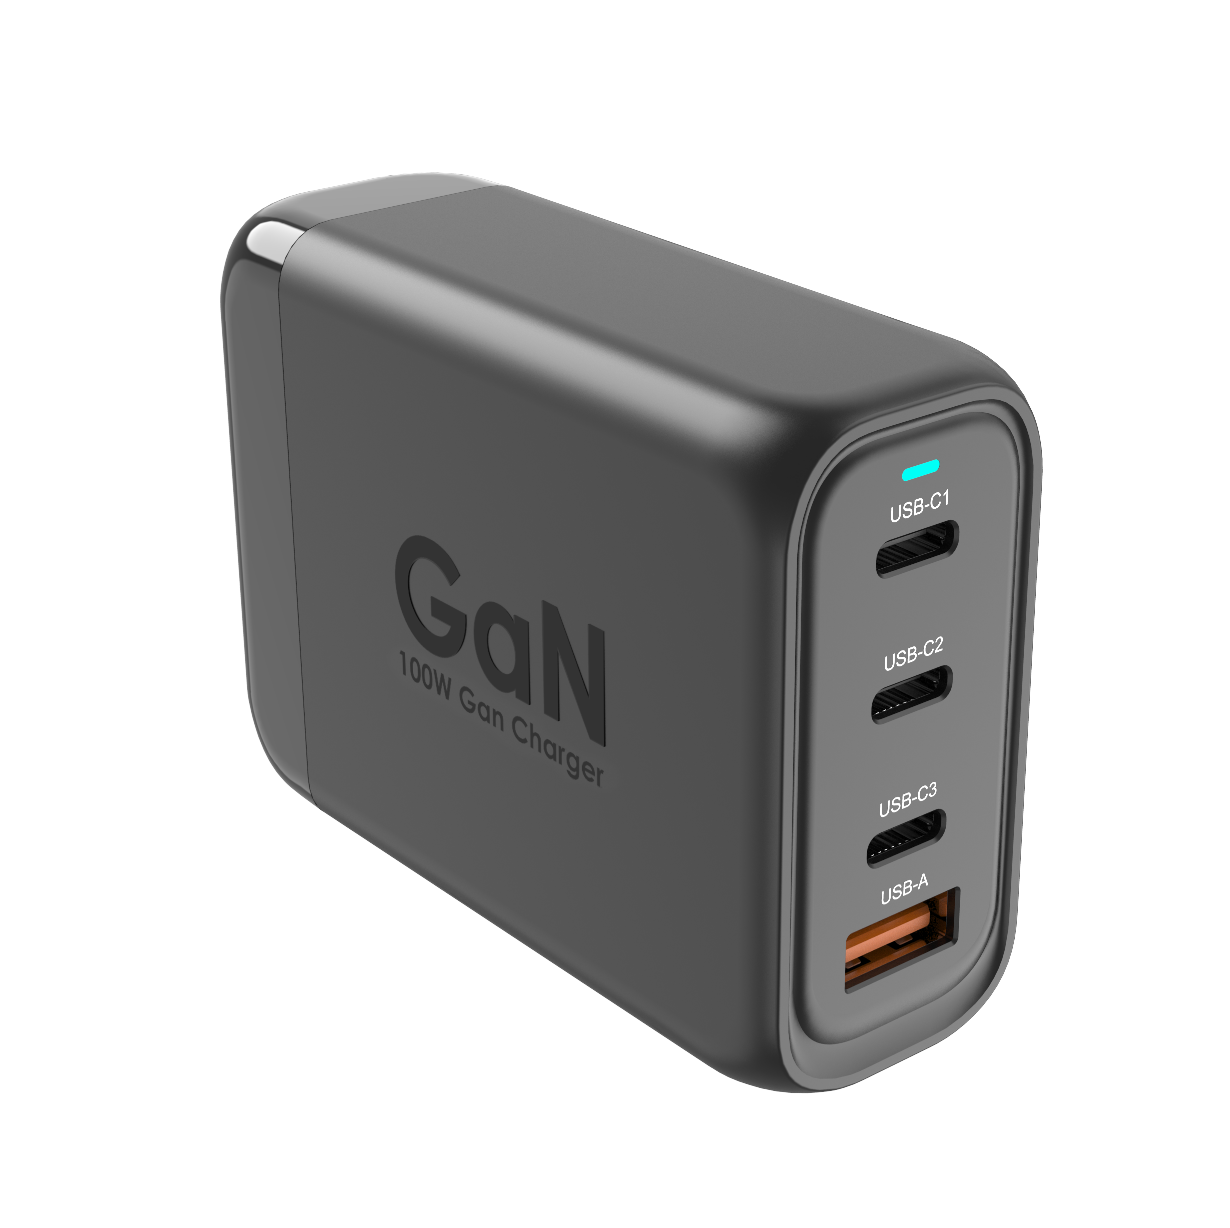 (New) DM 100W GaN USB 4-Port Fast Charger